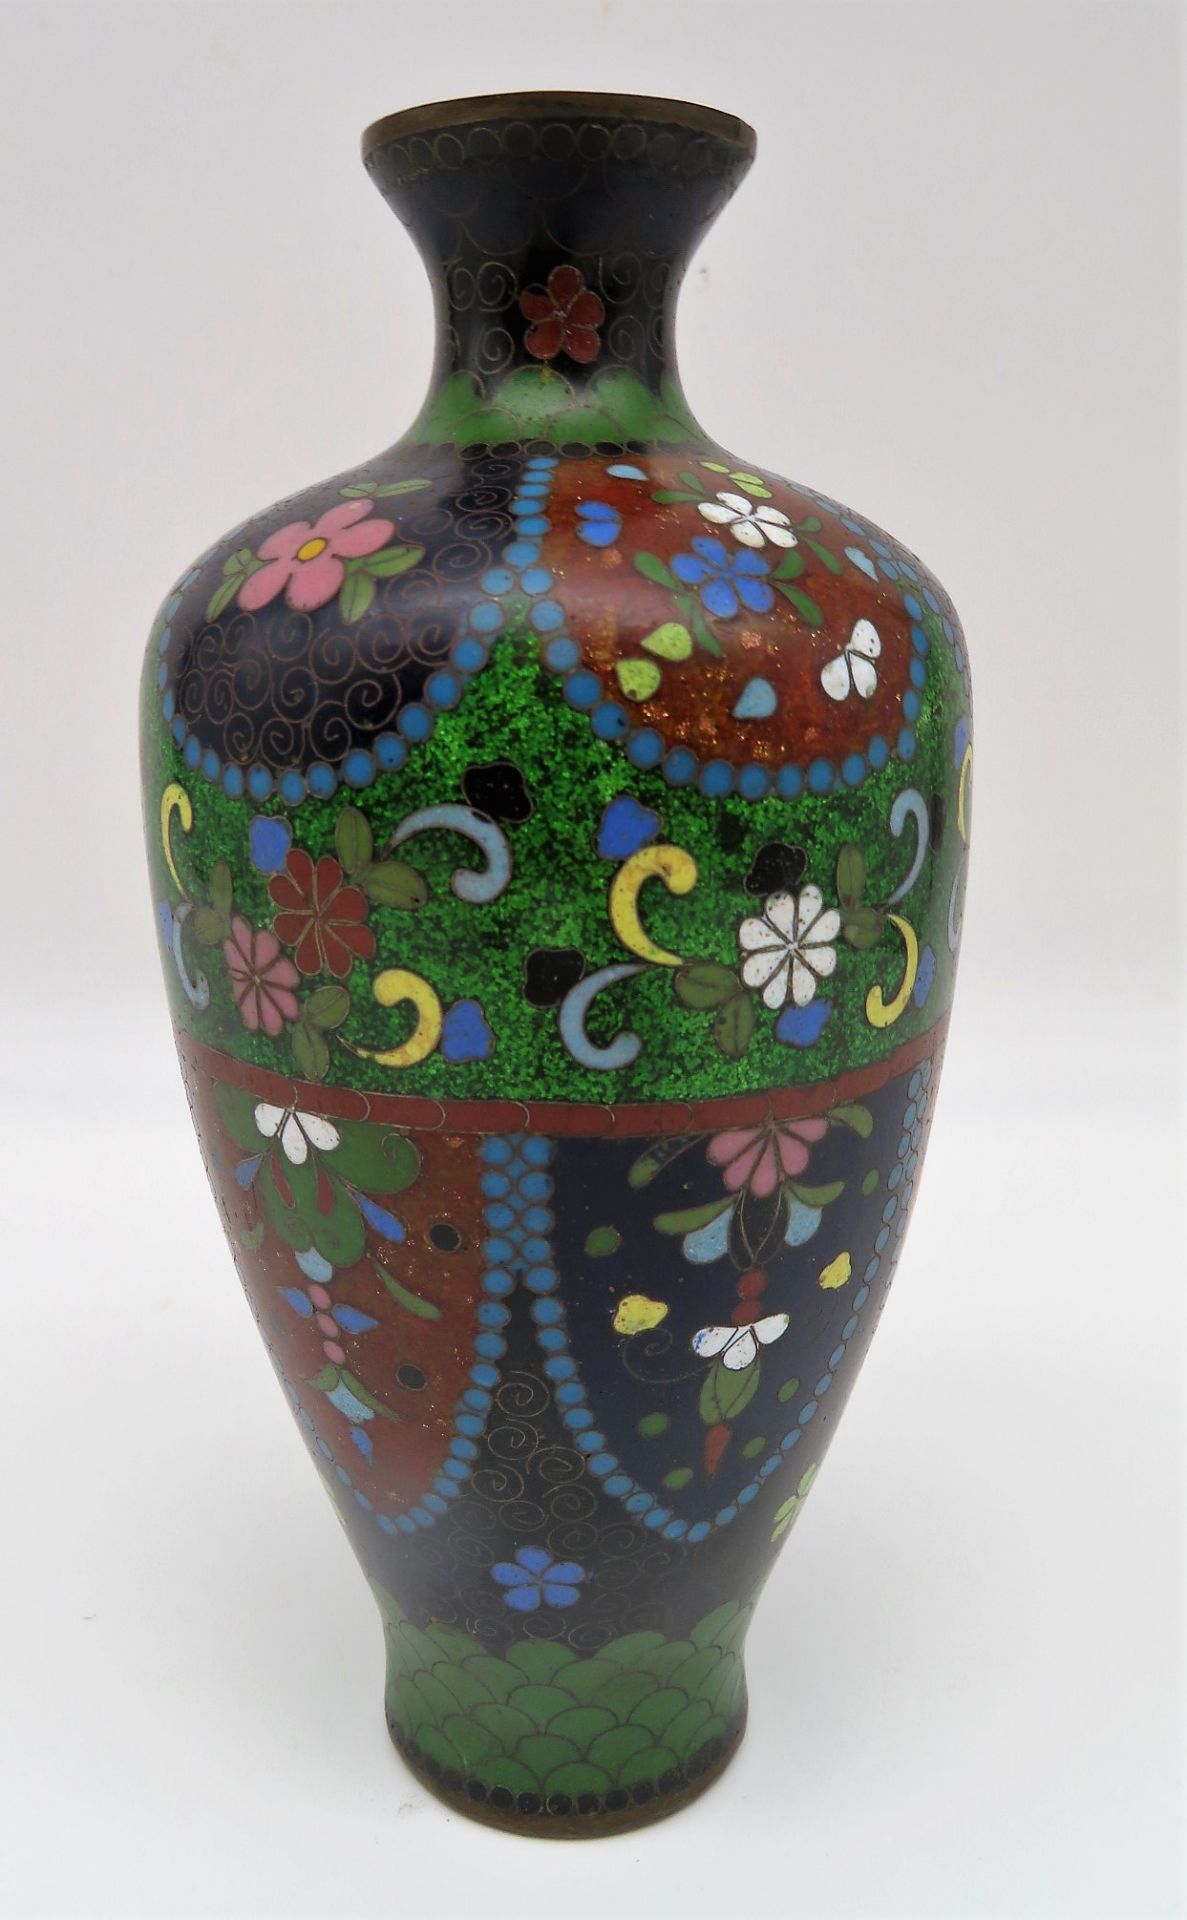 Cloisonné Vase, Japan, Meiji Periode, 1868 - 1912, farbiger Zellenschmelz, h 17 cm, d 8 cm.